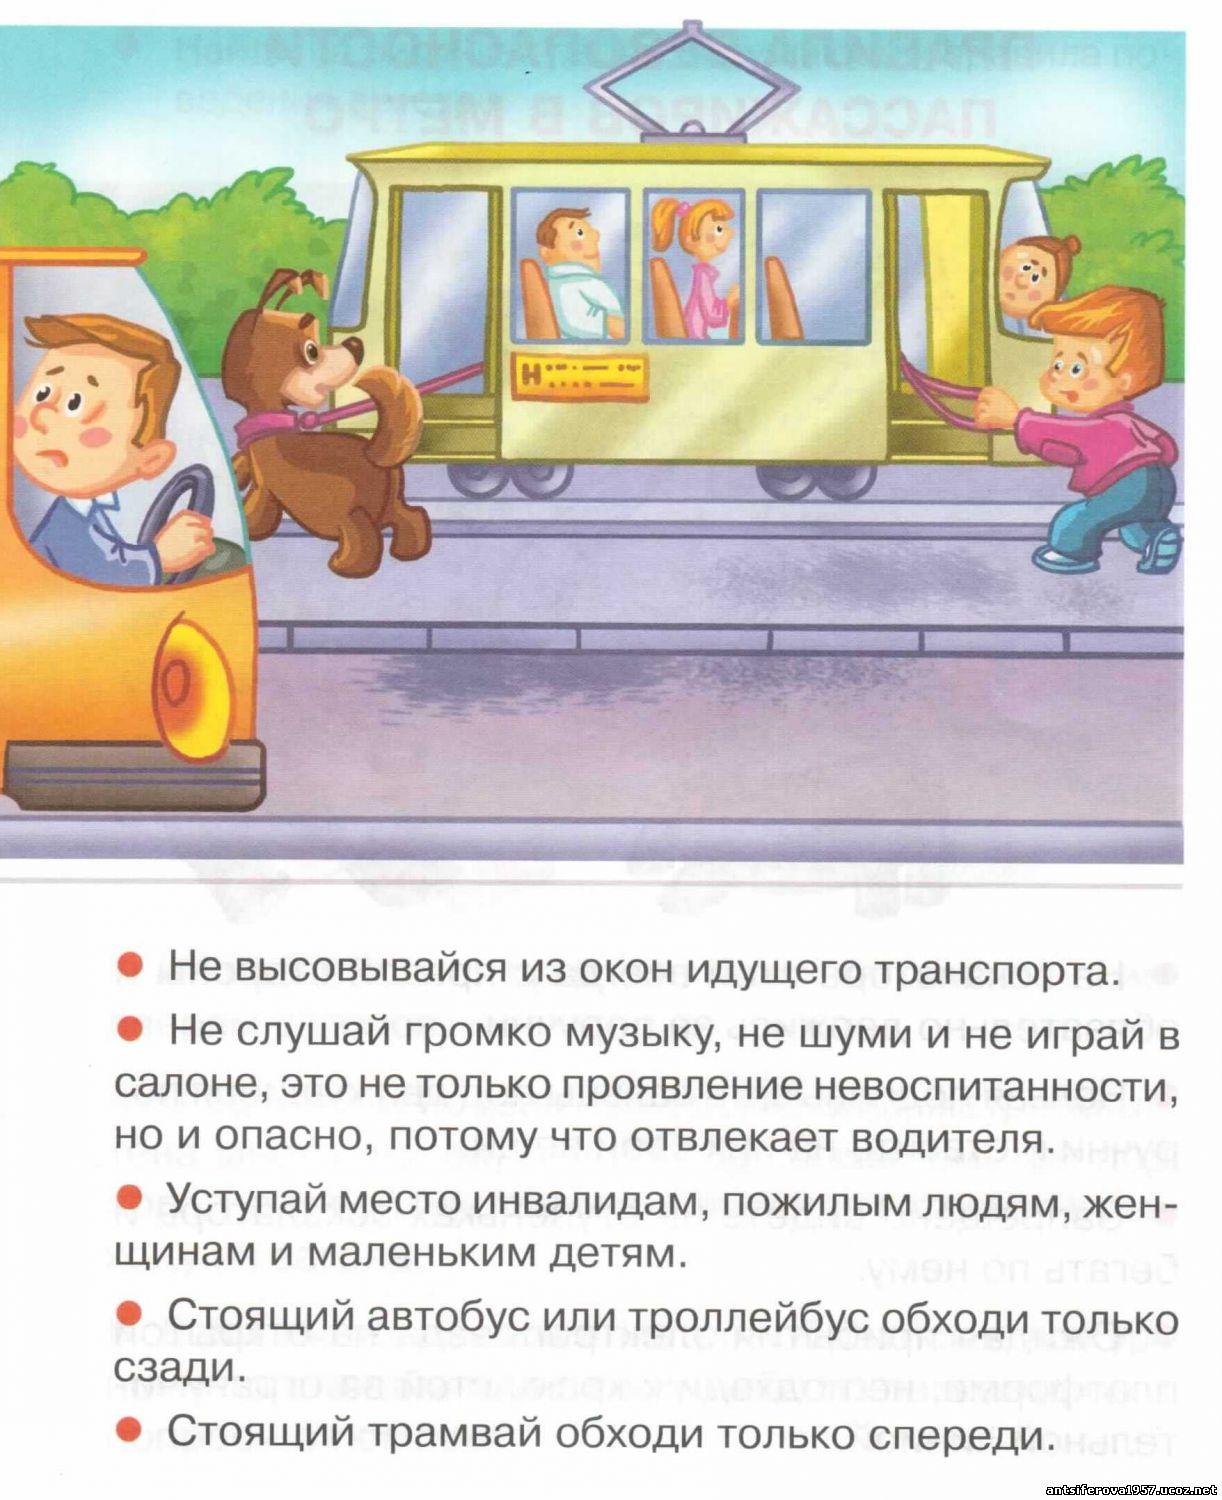 Правила безопасного поведения пассажира на транспорте. Правила поведения в общественном транспорте. Правила поведения пассажиров в общественном транспорте. Безопасность детей в общественном транспорте. Правила поведения пассажиро.